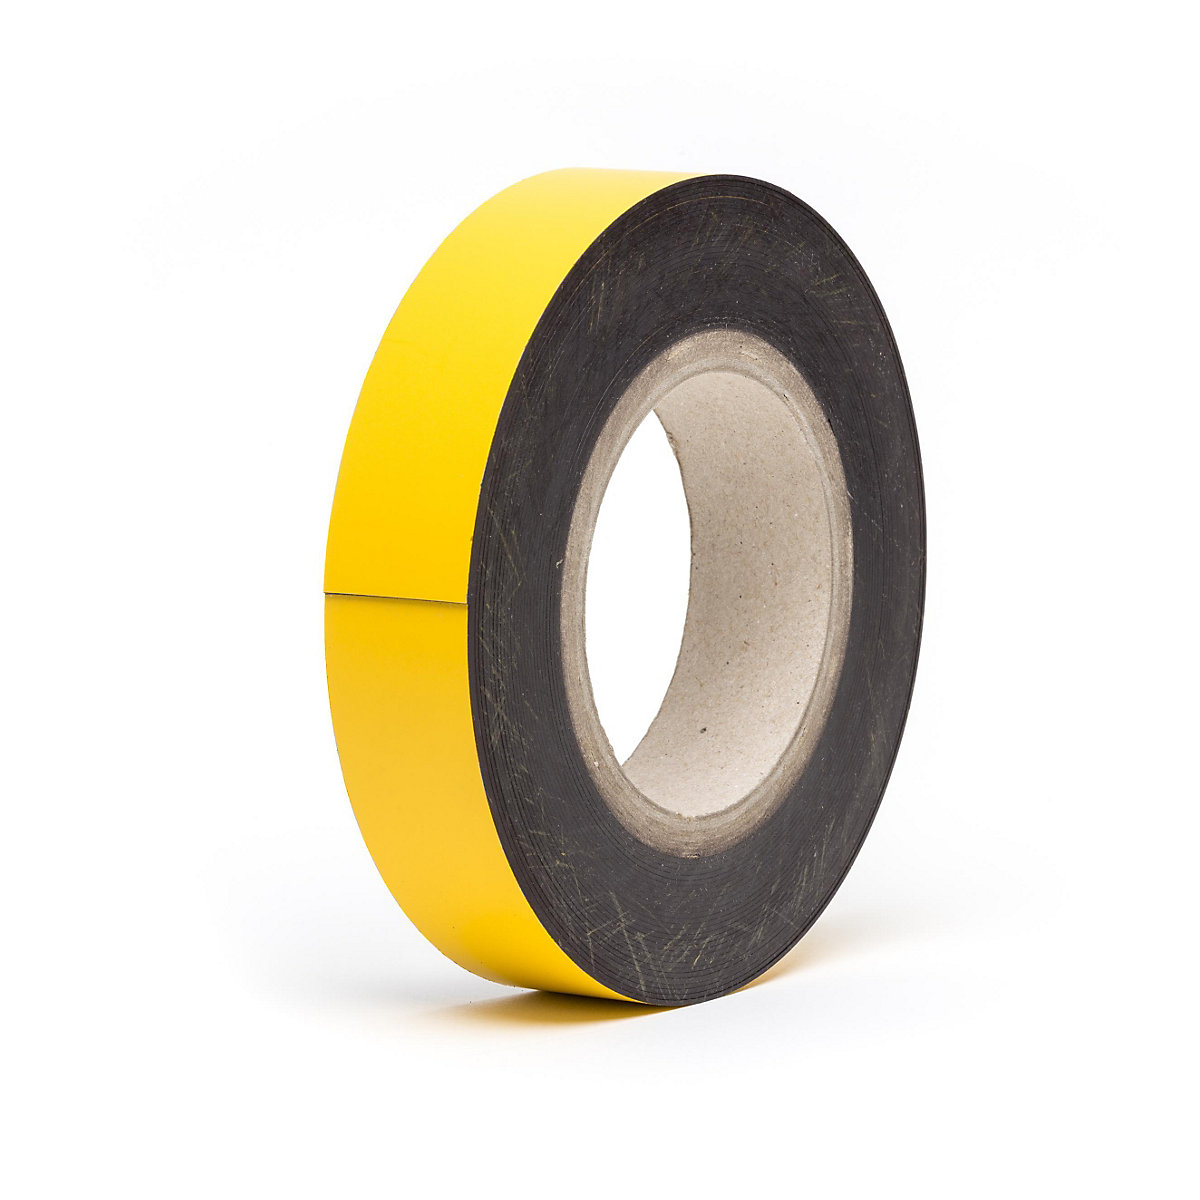 Rótulos magnéticos para almacén, mercancía en rollo, amarillo, altura 30 mm, longitud de rollo 10 m-14